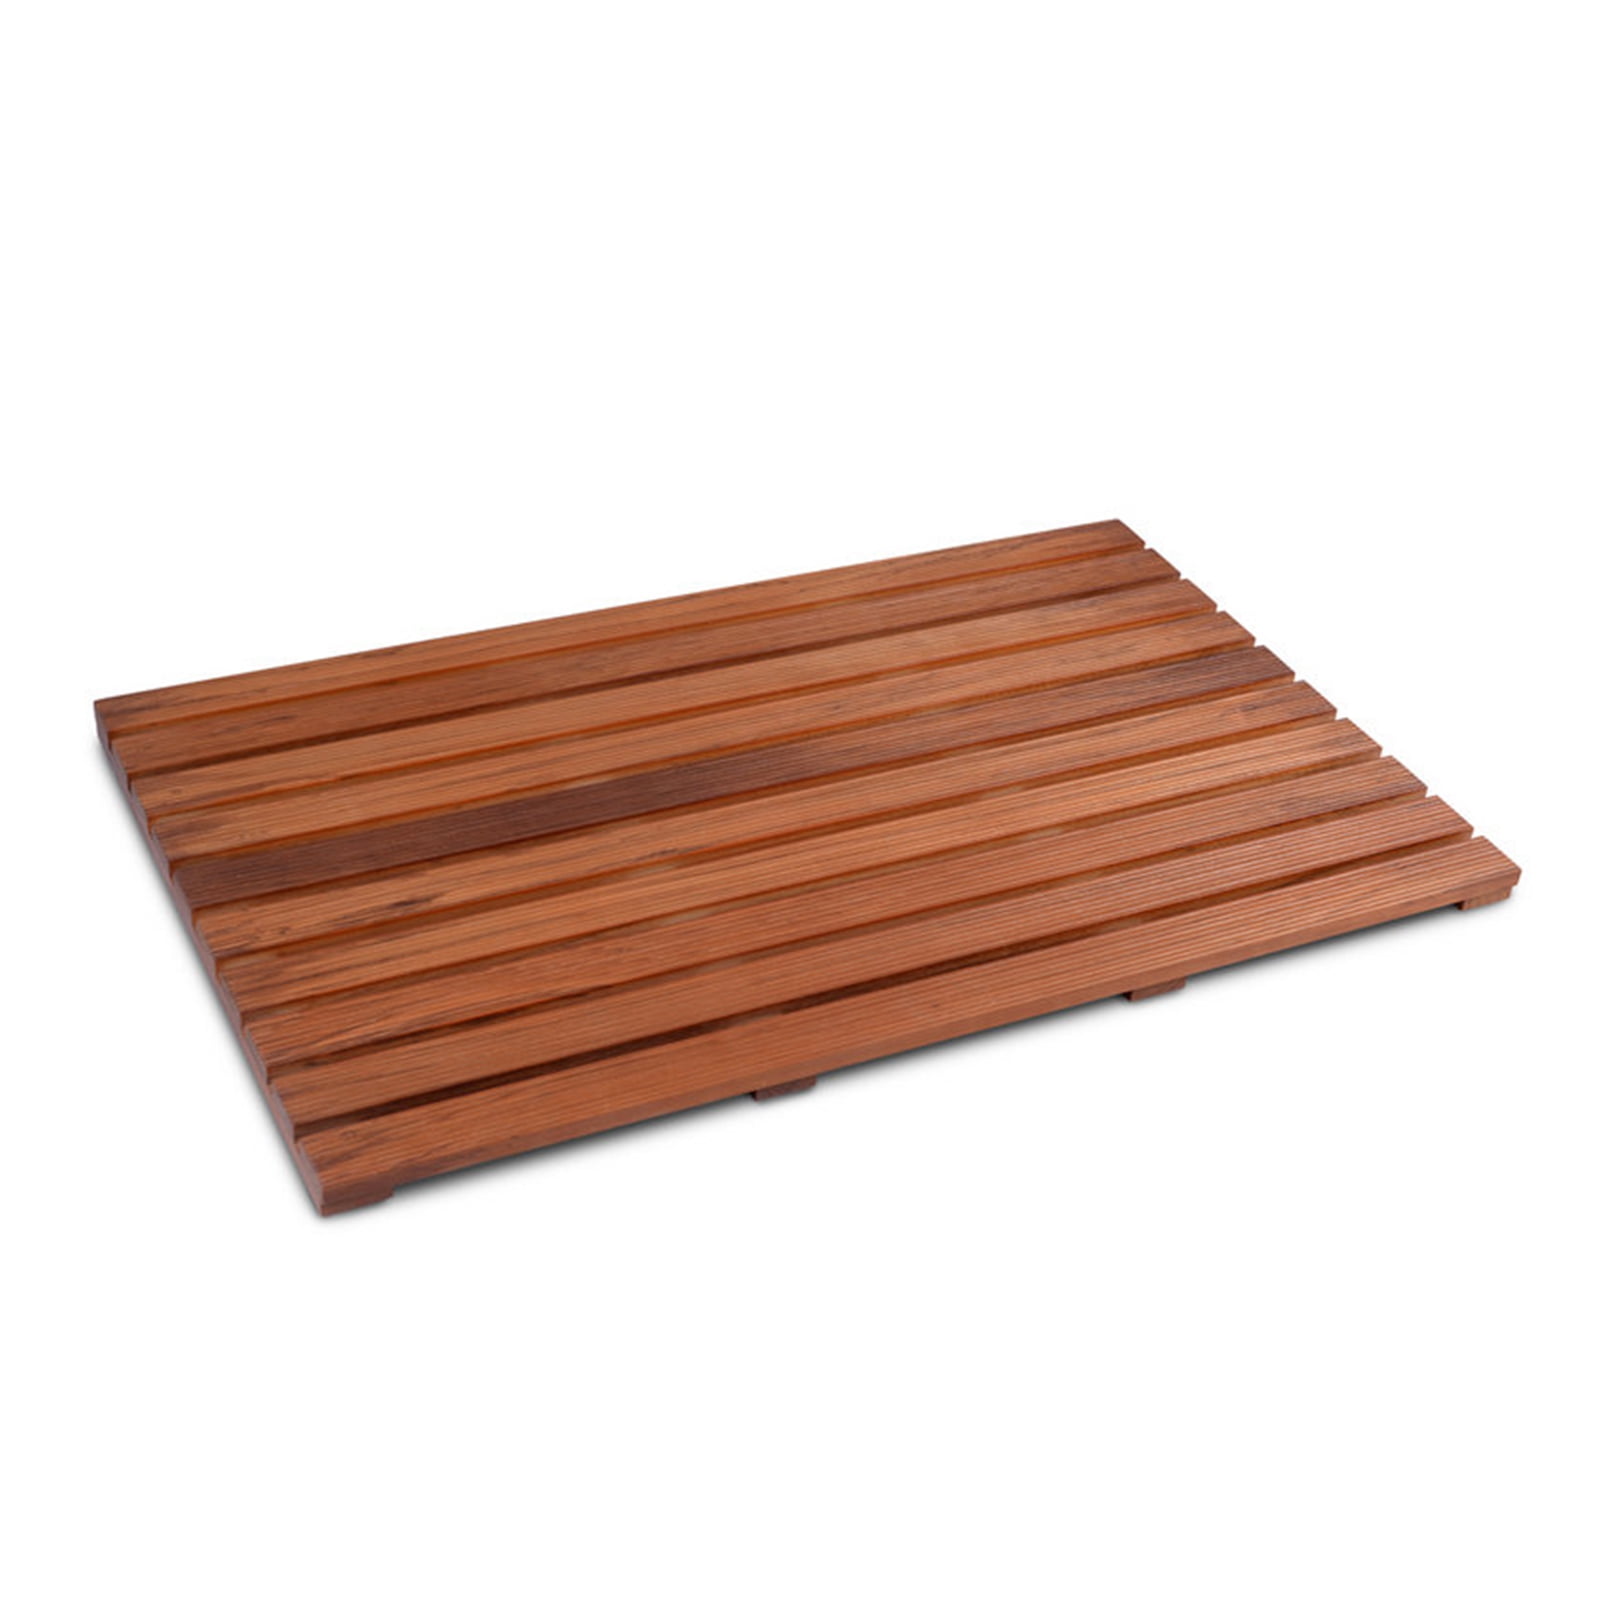 010 Non-Slip Mold Resistant Bamboo Floor Mat Bathroom Wood Stripe Floor  Doormat Bath Solid Wood